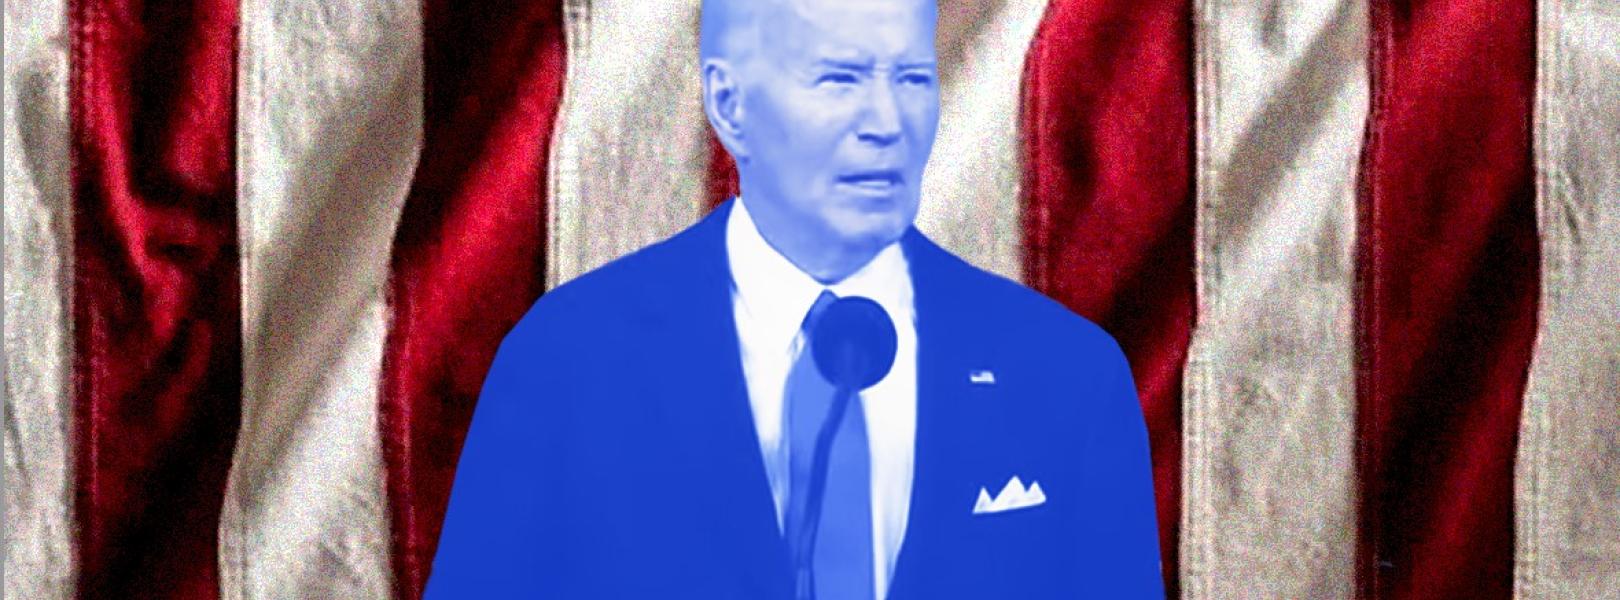 Het afscheidscadeau van Joe Biden aan Amerika zal het christelijk fascisme zijn